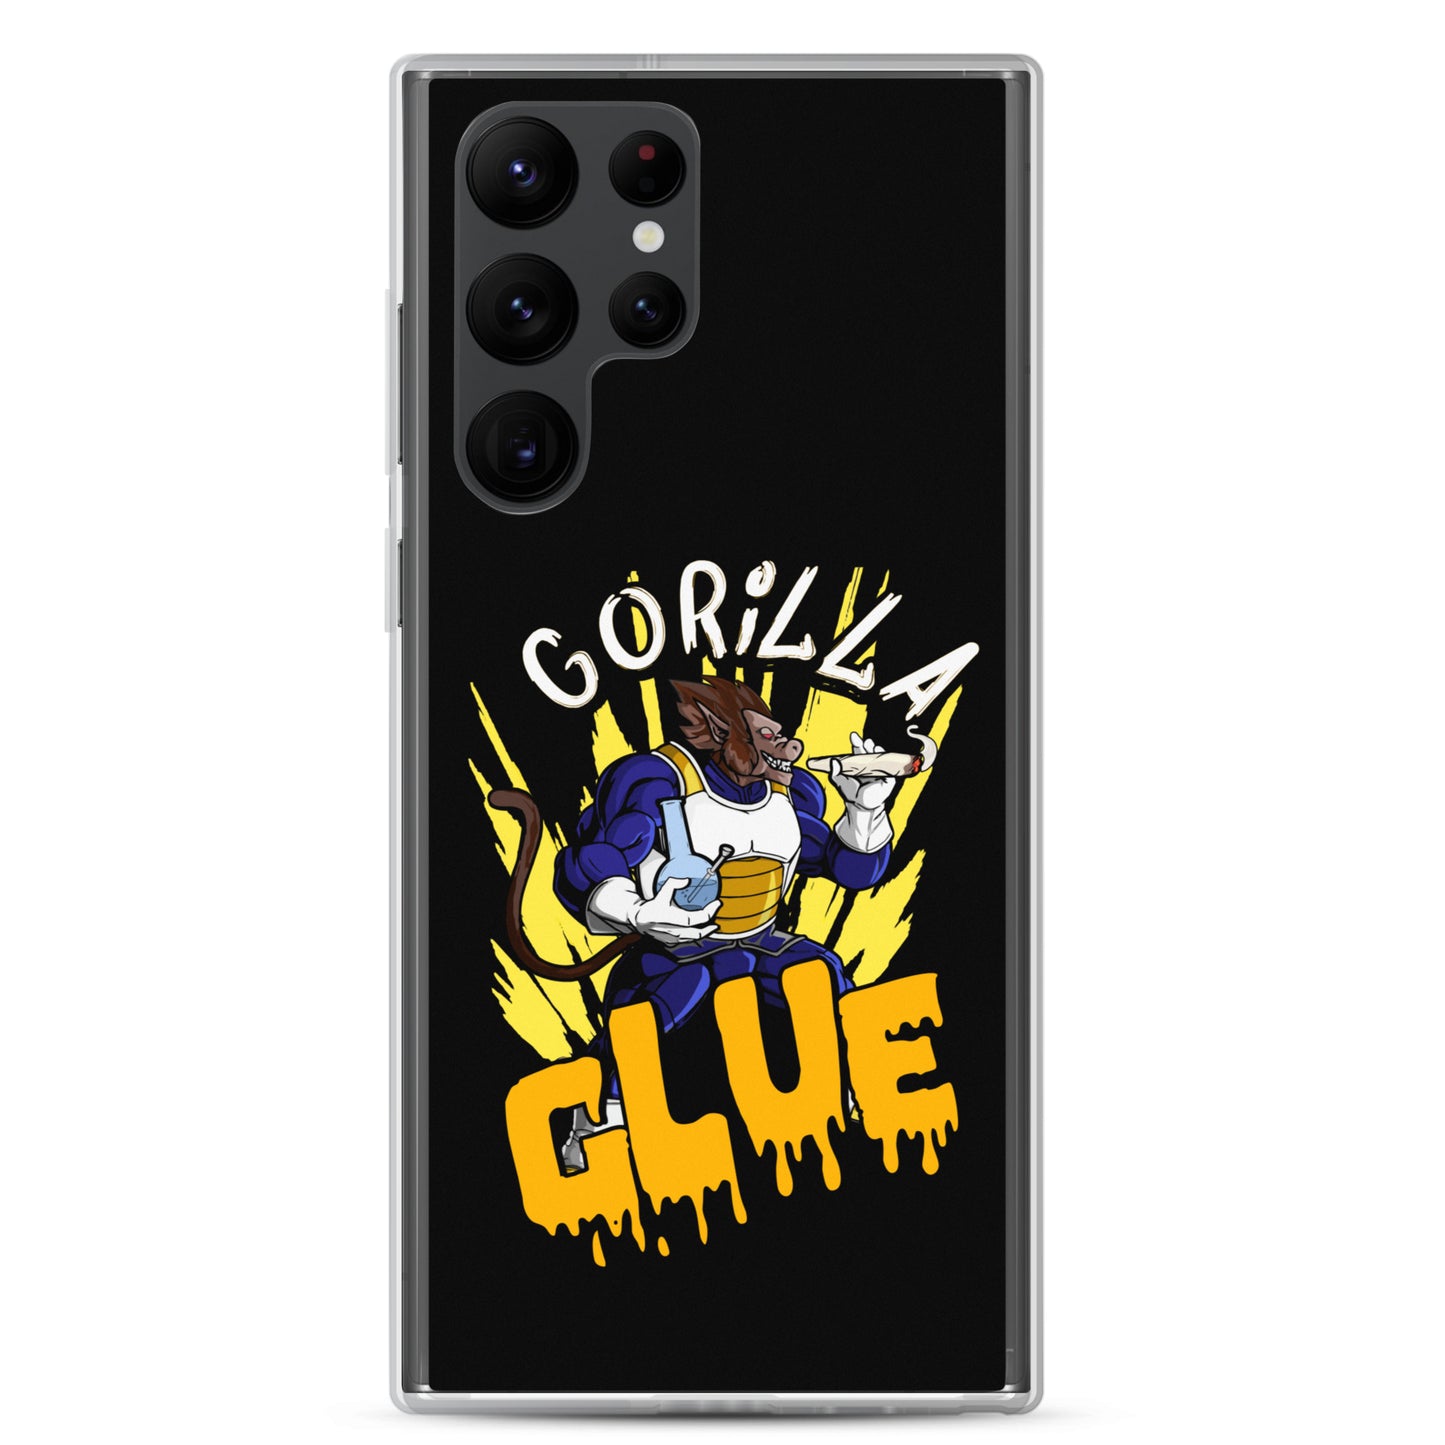 "Gorilla Glue DBZ" Samsung case